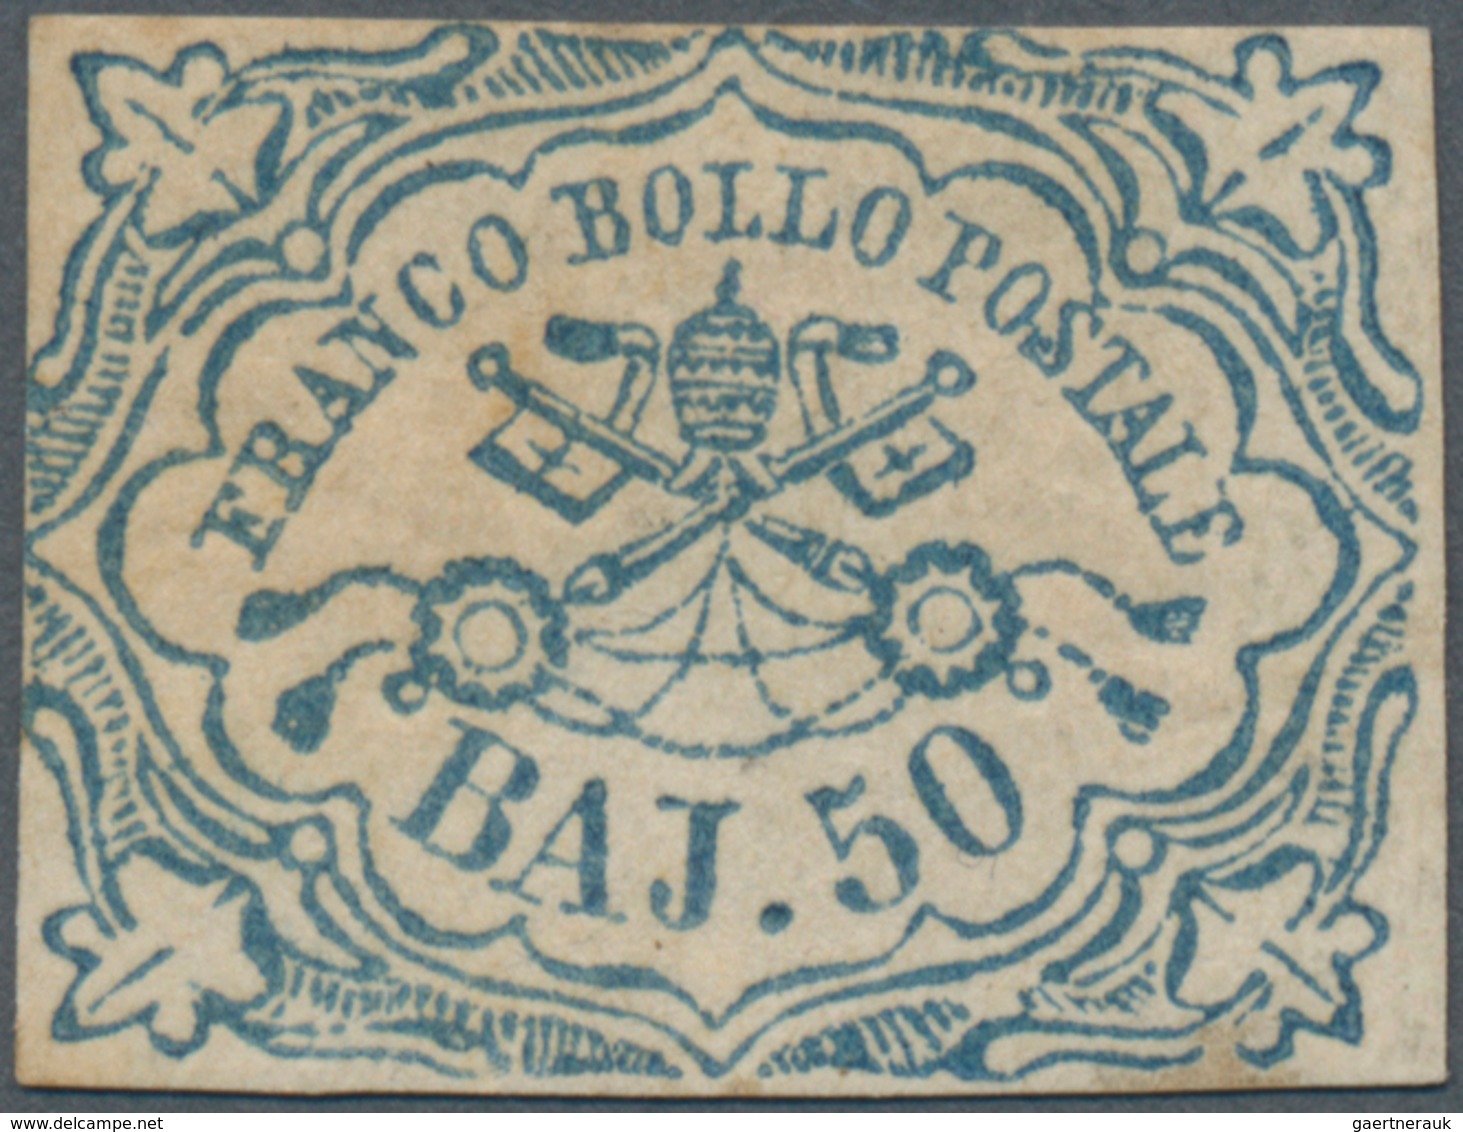 Italien - Altitalienische Staaten: Kirchenstaat: 1852, 50 Baj Blue Mint With Original Gum (browned) - Estados Pontificados